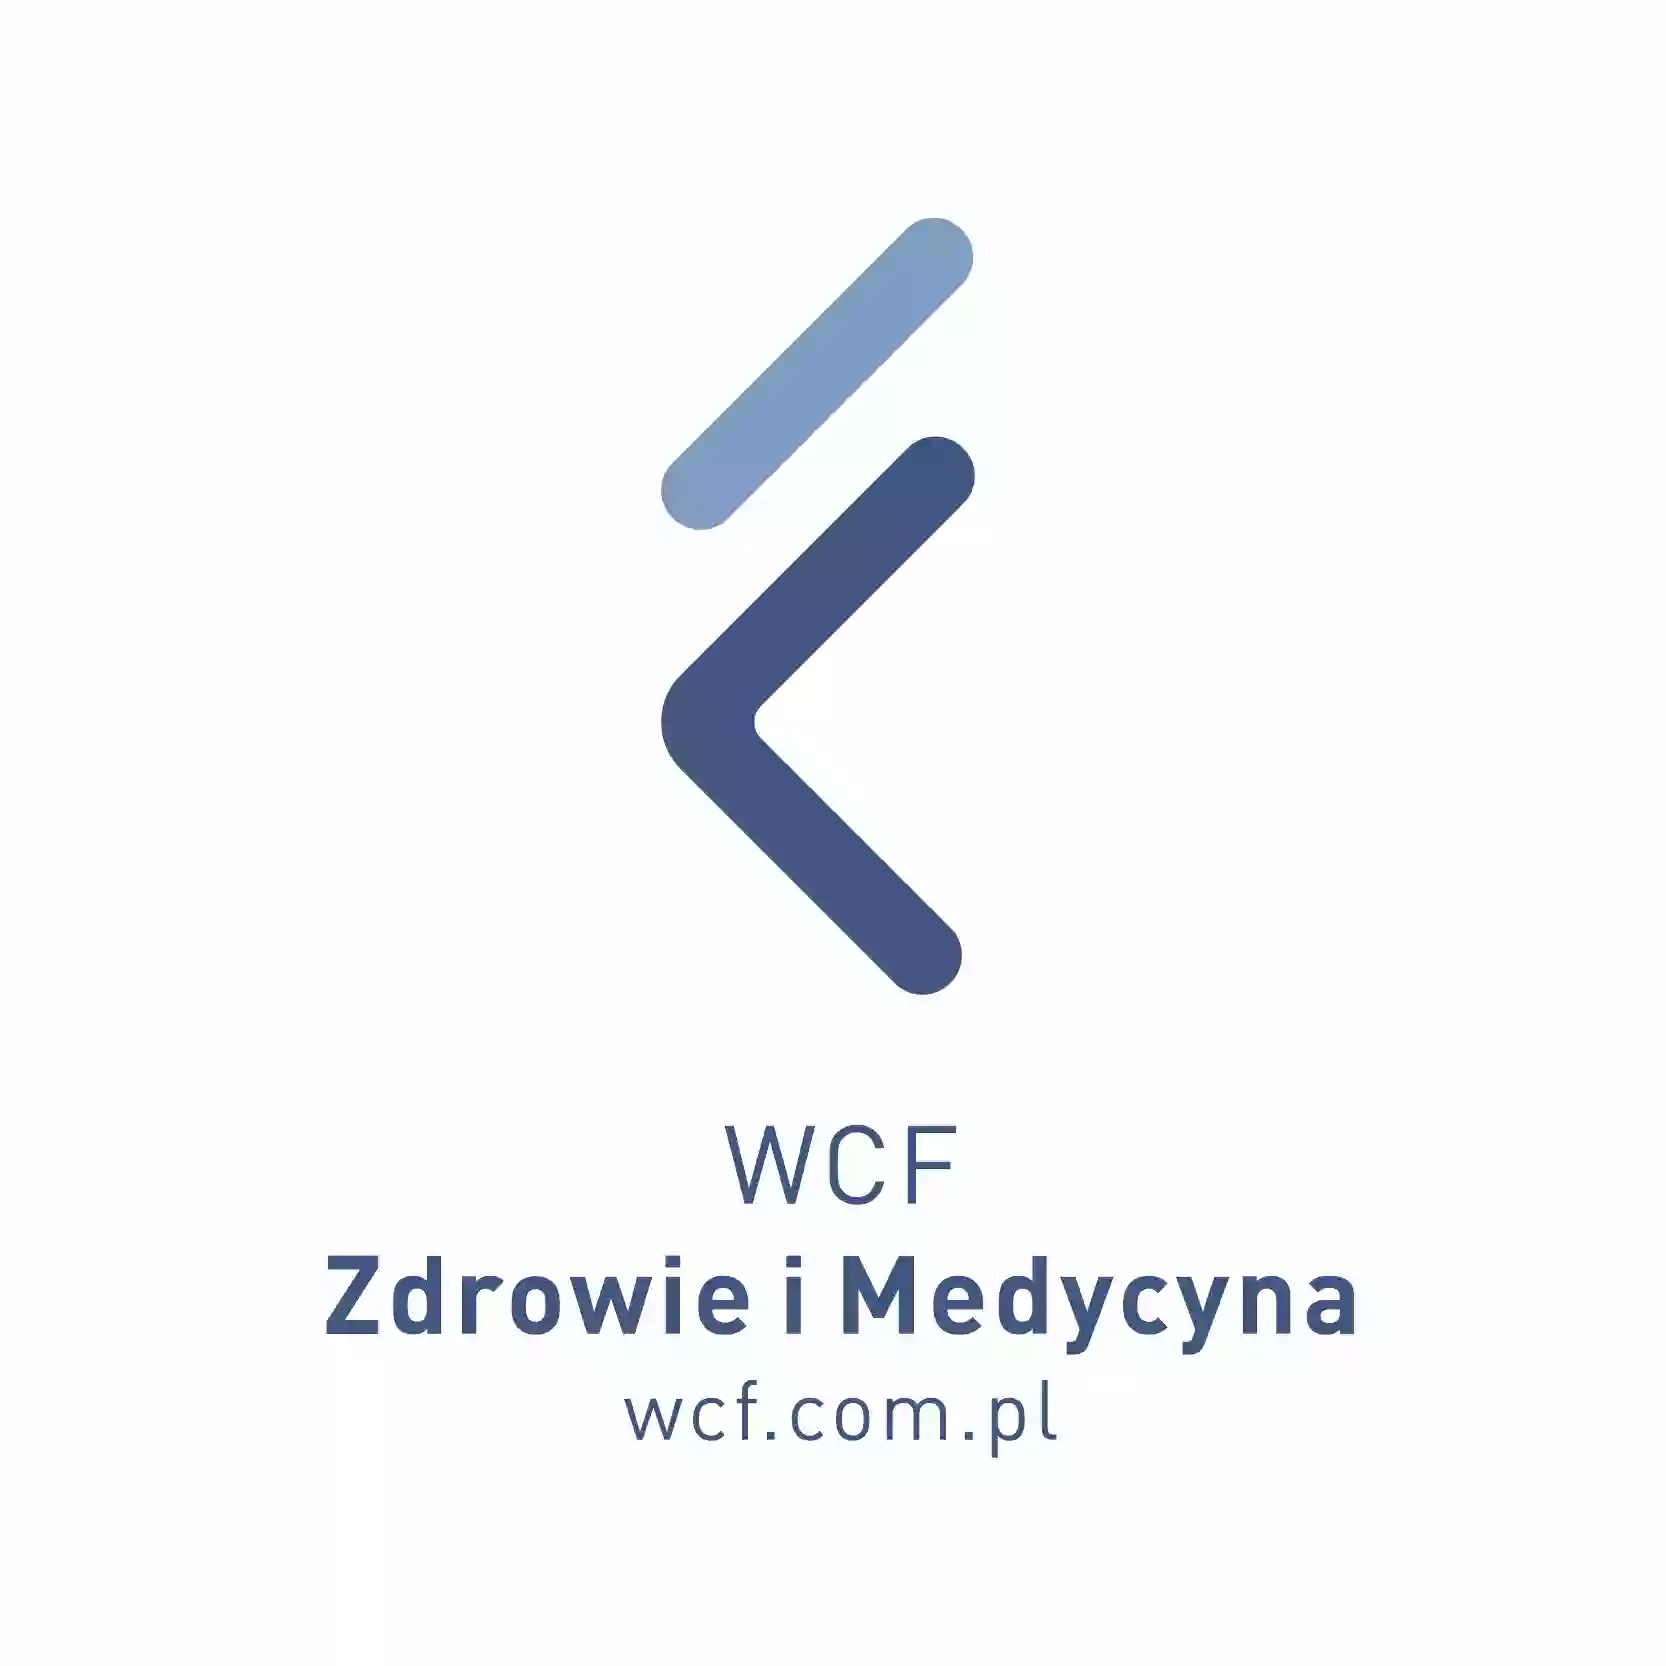 Wielkopolskie Centrum Fizjoterapii Pobiedziska dr Mateusz W. Romanowski DO